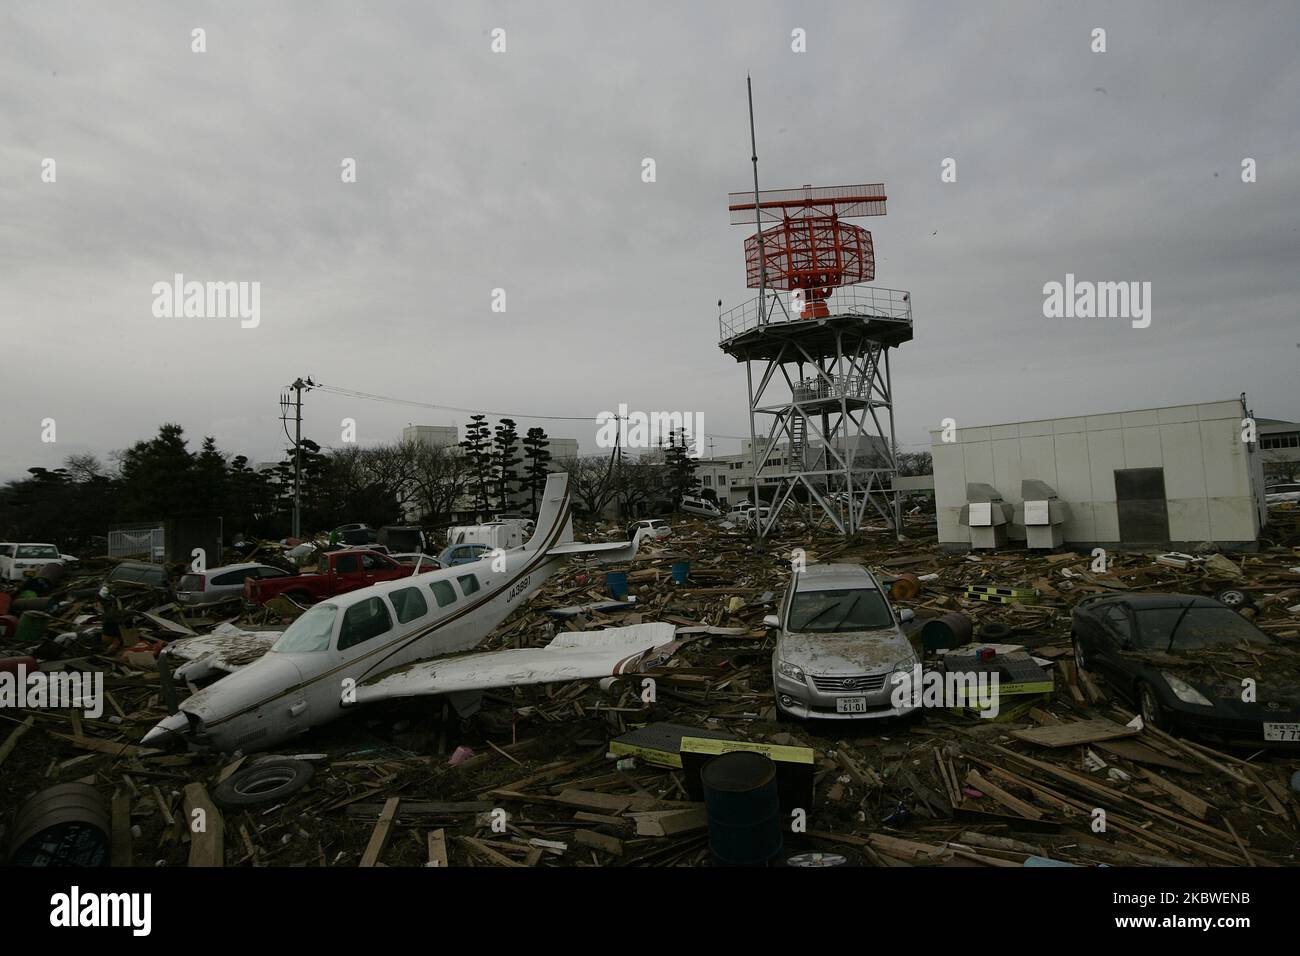 22. März 2011-Sendai, Japan-Ein Blick auf Trümmer und Schlamm, die beim Tsunami bedeckt wurden, der am 22. März 2011 den zerstörten Flughafen in Sendai traf. Am 11. März 2011 ereignete sich in Japan ein Erdbeben mit einer Magnitude von 9,0, dem größten in der Geschichte des Landes und einem der fünf mächtigsten, die jemals auf der ganzen Welt verzeichnet wurden. Innerhalb einer Stunde nach dem Erdbeben wurden die Städte, die das Ufer säumten, durch einen massiven Tsunami abgeflacht, der durch die Energie verursacht wurde, die durch das Erdbeben freigesetzt wurde. Mit Wellen von bis zu vier oder fünf Metern Höhe stürzten sie durch Häuser, Städte und Felder der Zivilbevölkerung. (Foto von Seung-il Ryu/NurPhoto) Stockfoto